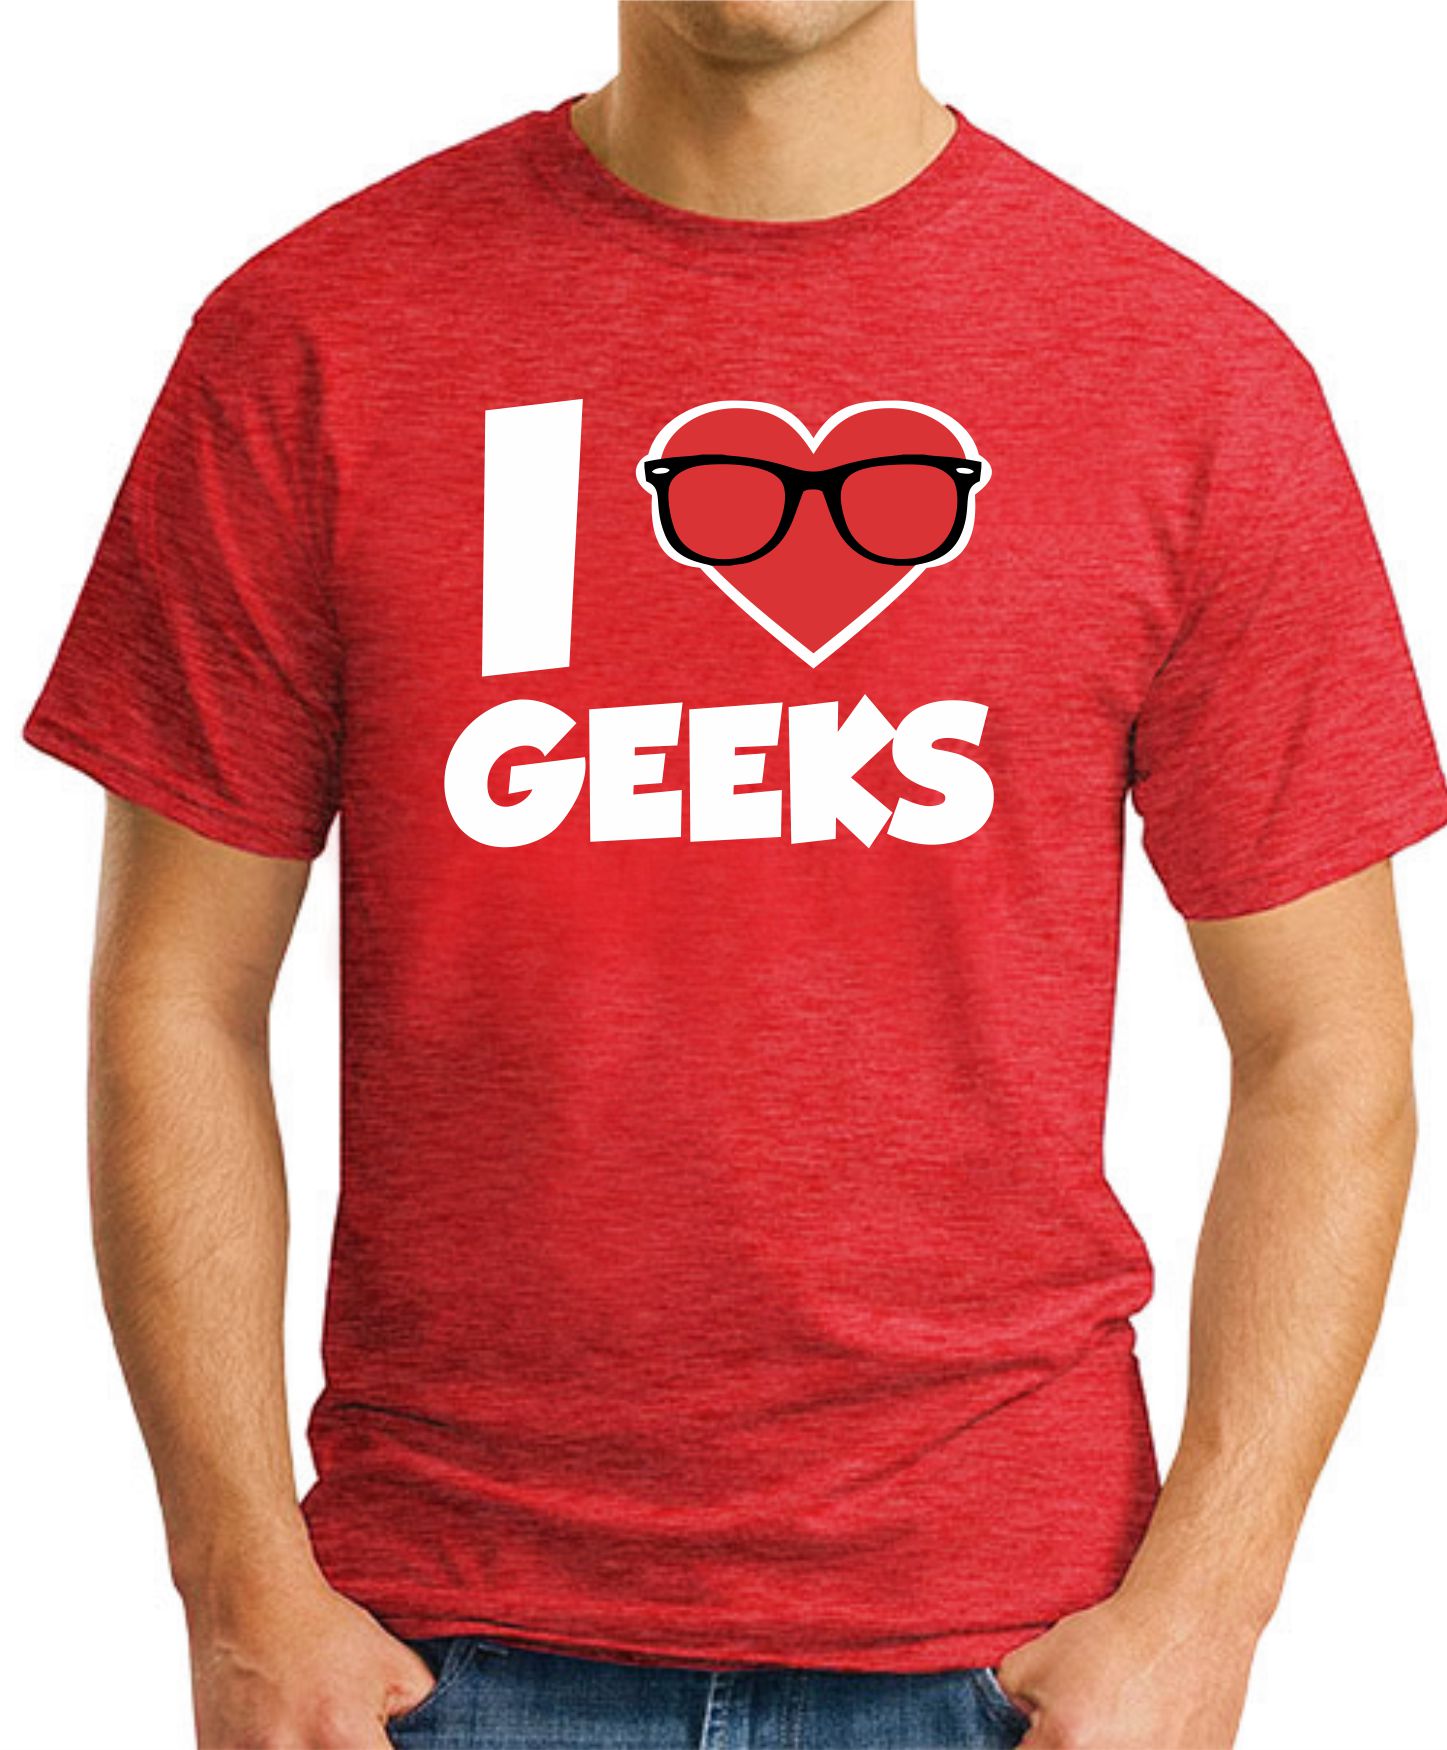 I HEART GEEKS T-SHIRT - GeekyTees